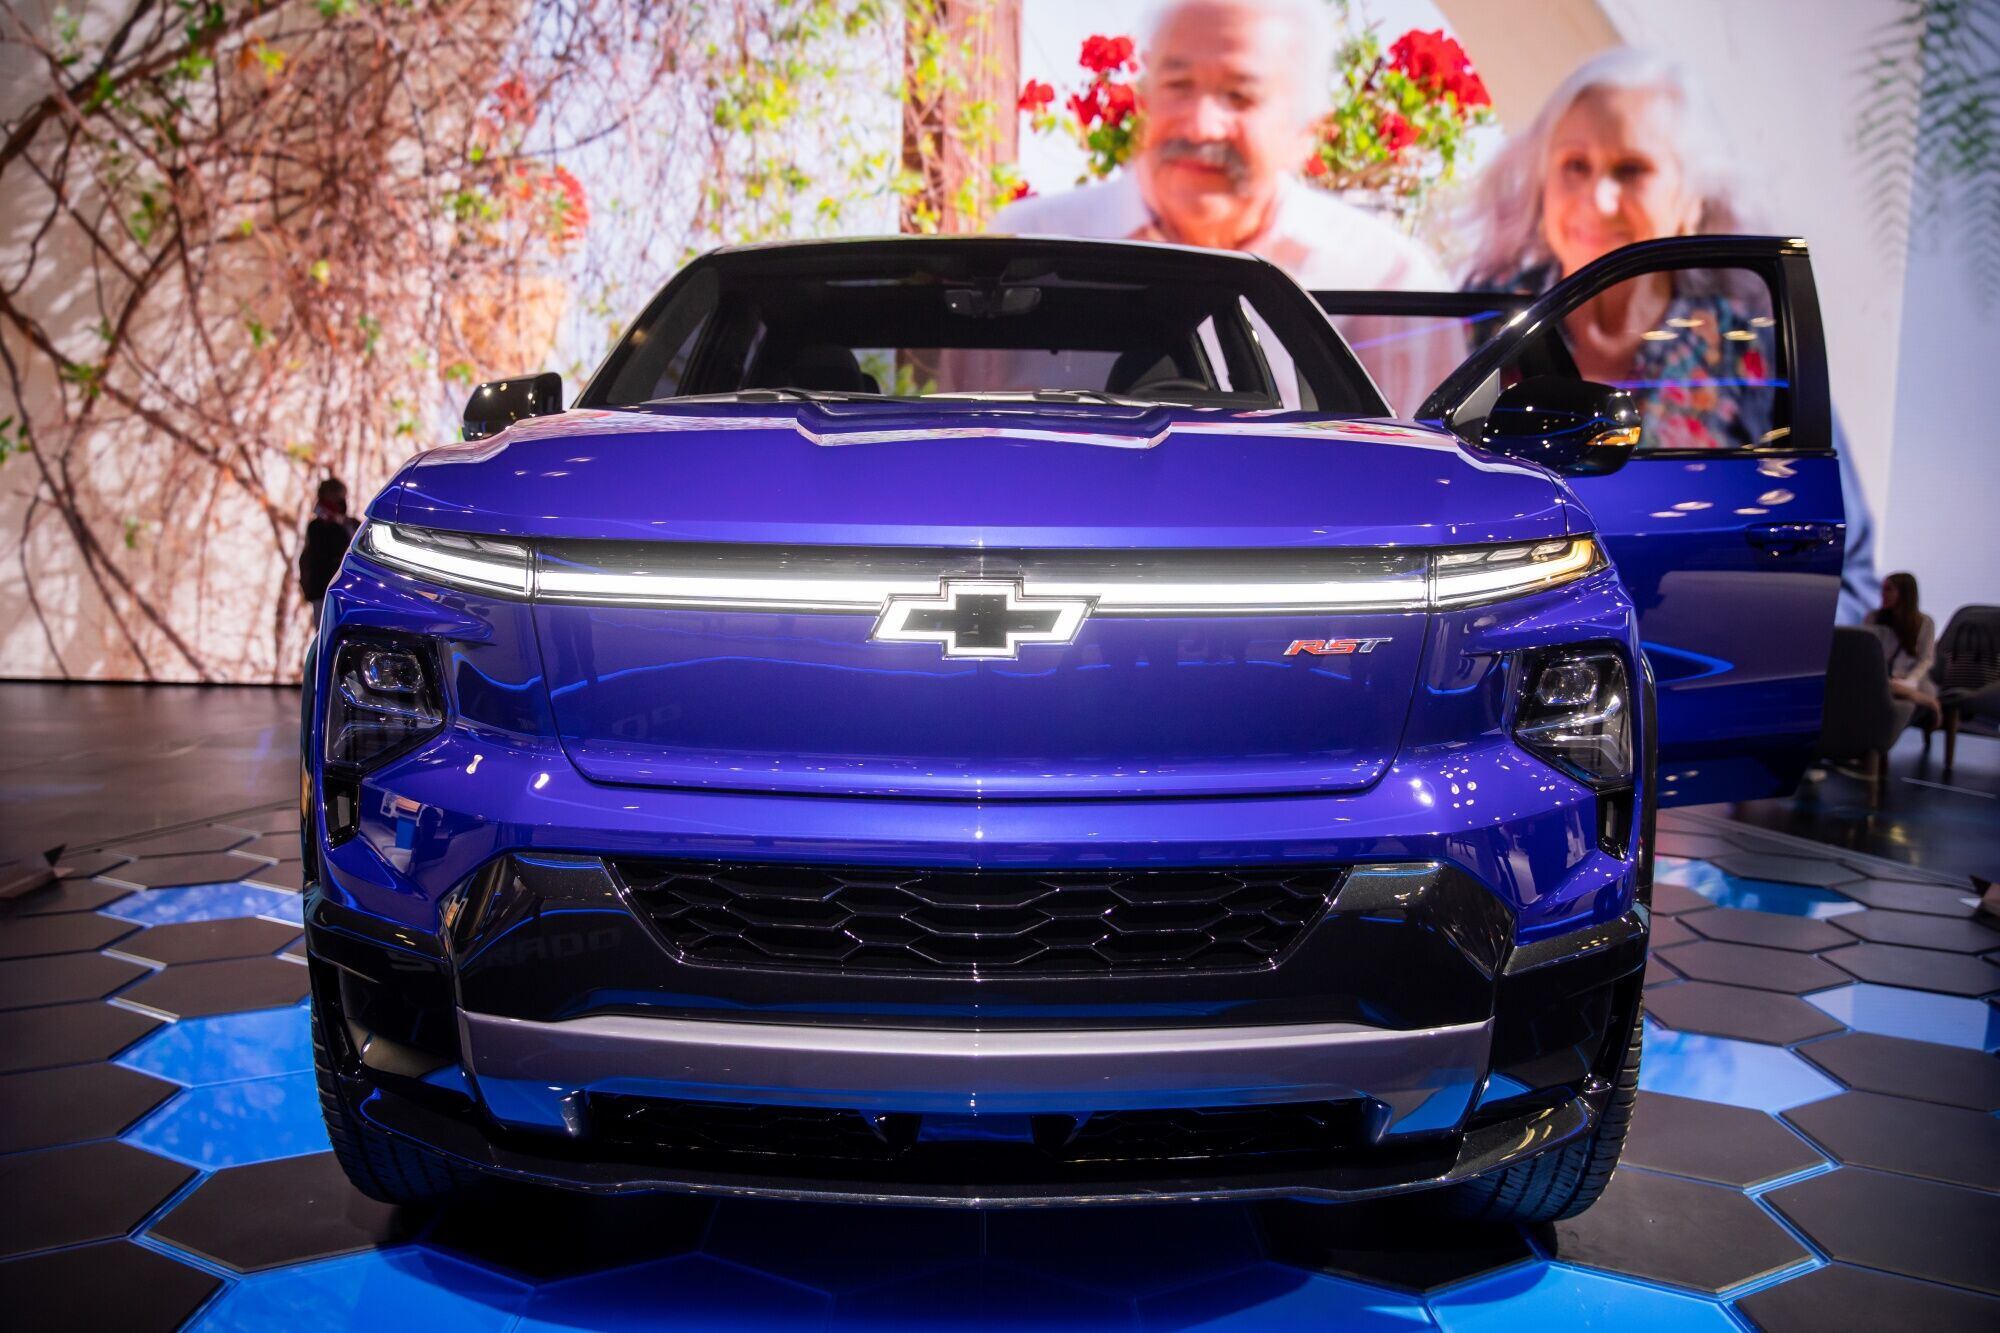 La nueva Chevrolet Silverado EV presentada esta semana en el Salón del Automóvil de New York, muestra el moño compuesto por un haz de luz blanca, como signo de la electrificación que llega a la marca. Photographer: Michael Nagle/Bloomberg